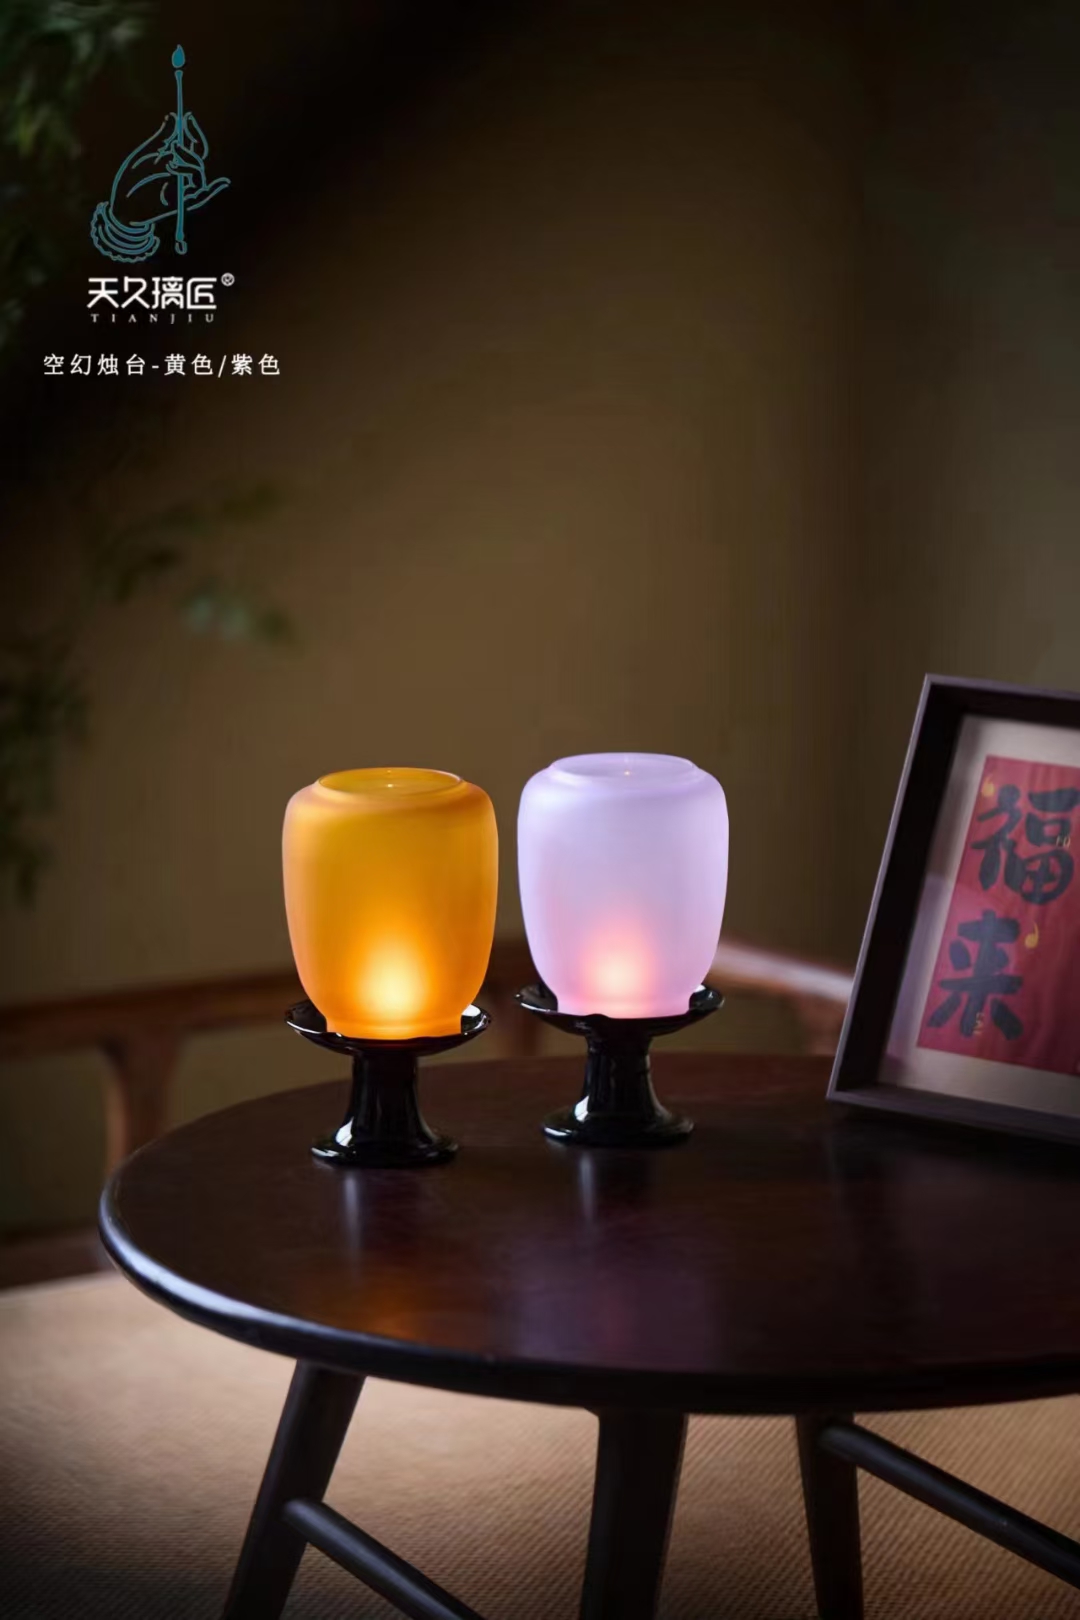 天久璃匠空幻烛台底座和灯罩全部采用进口彩色高硼硅玻璃材质茶具